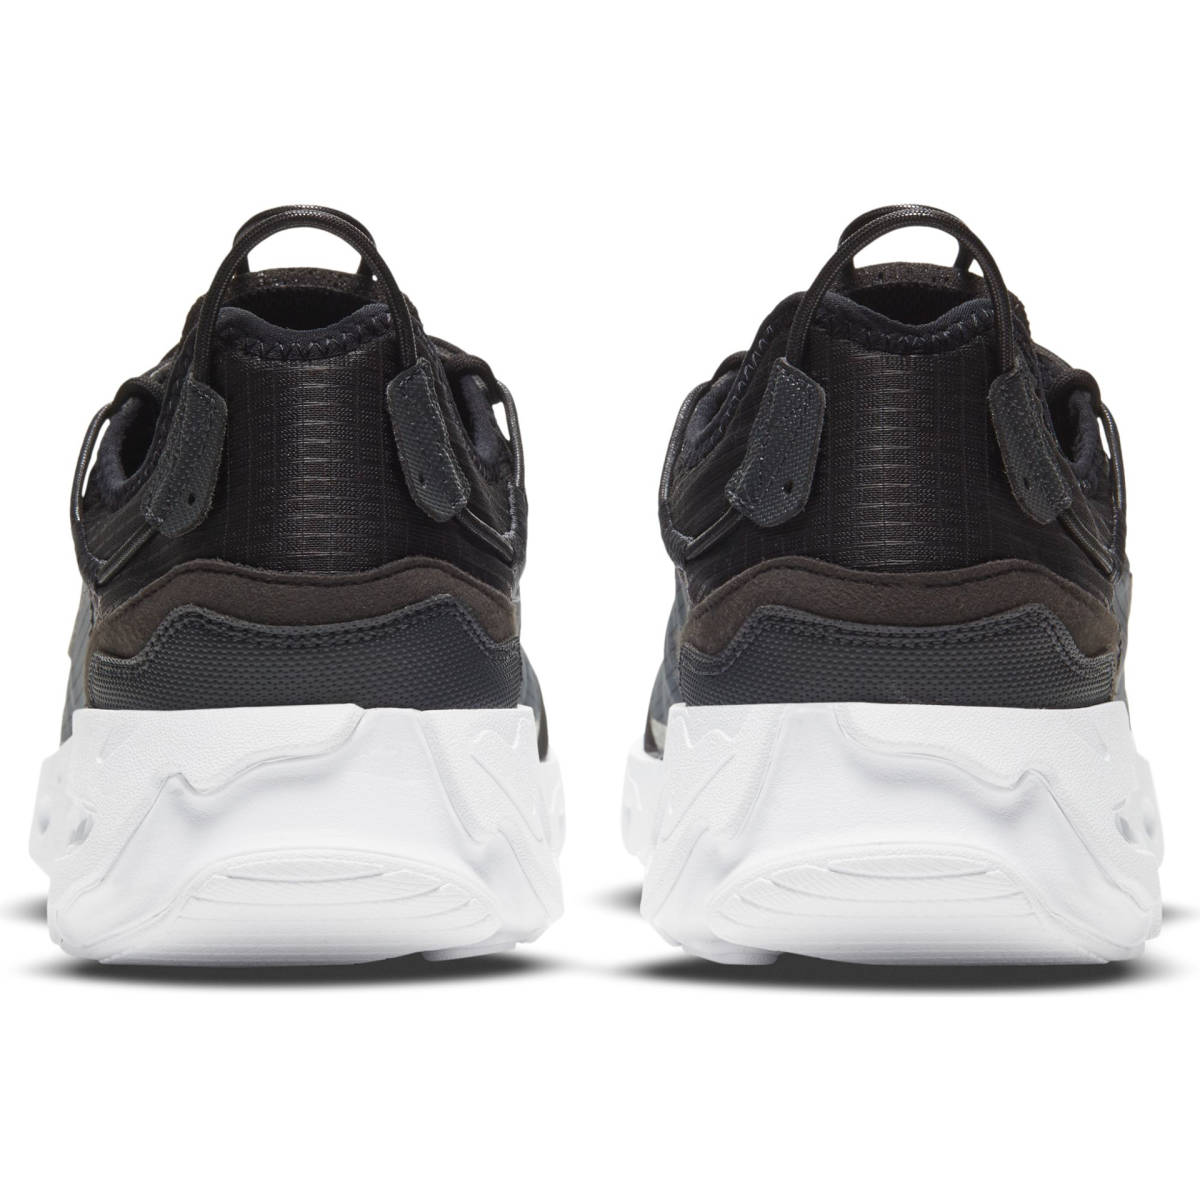 # Nike задний kto Live черный / серый / белый новый товар 30.0cm US12 NIKE REACT LIVE CV1772-003